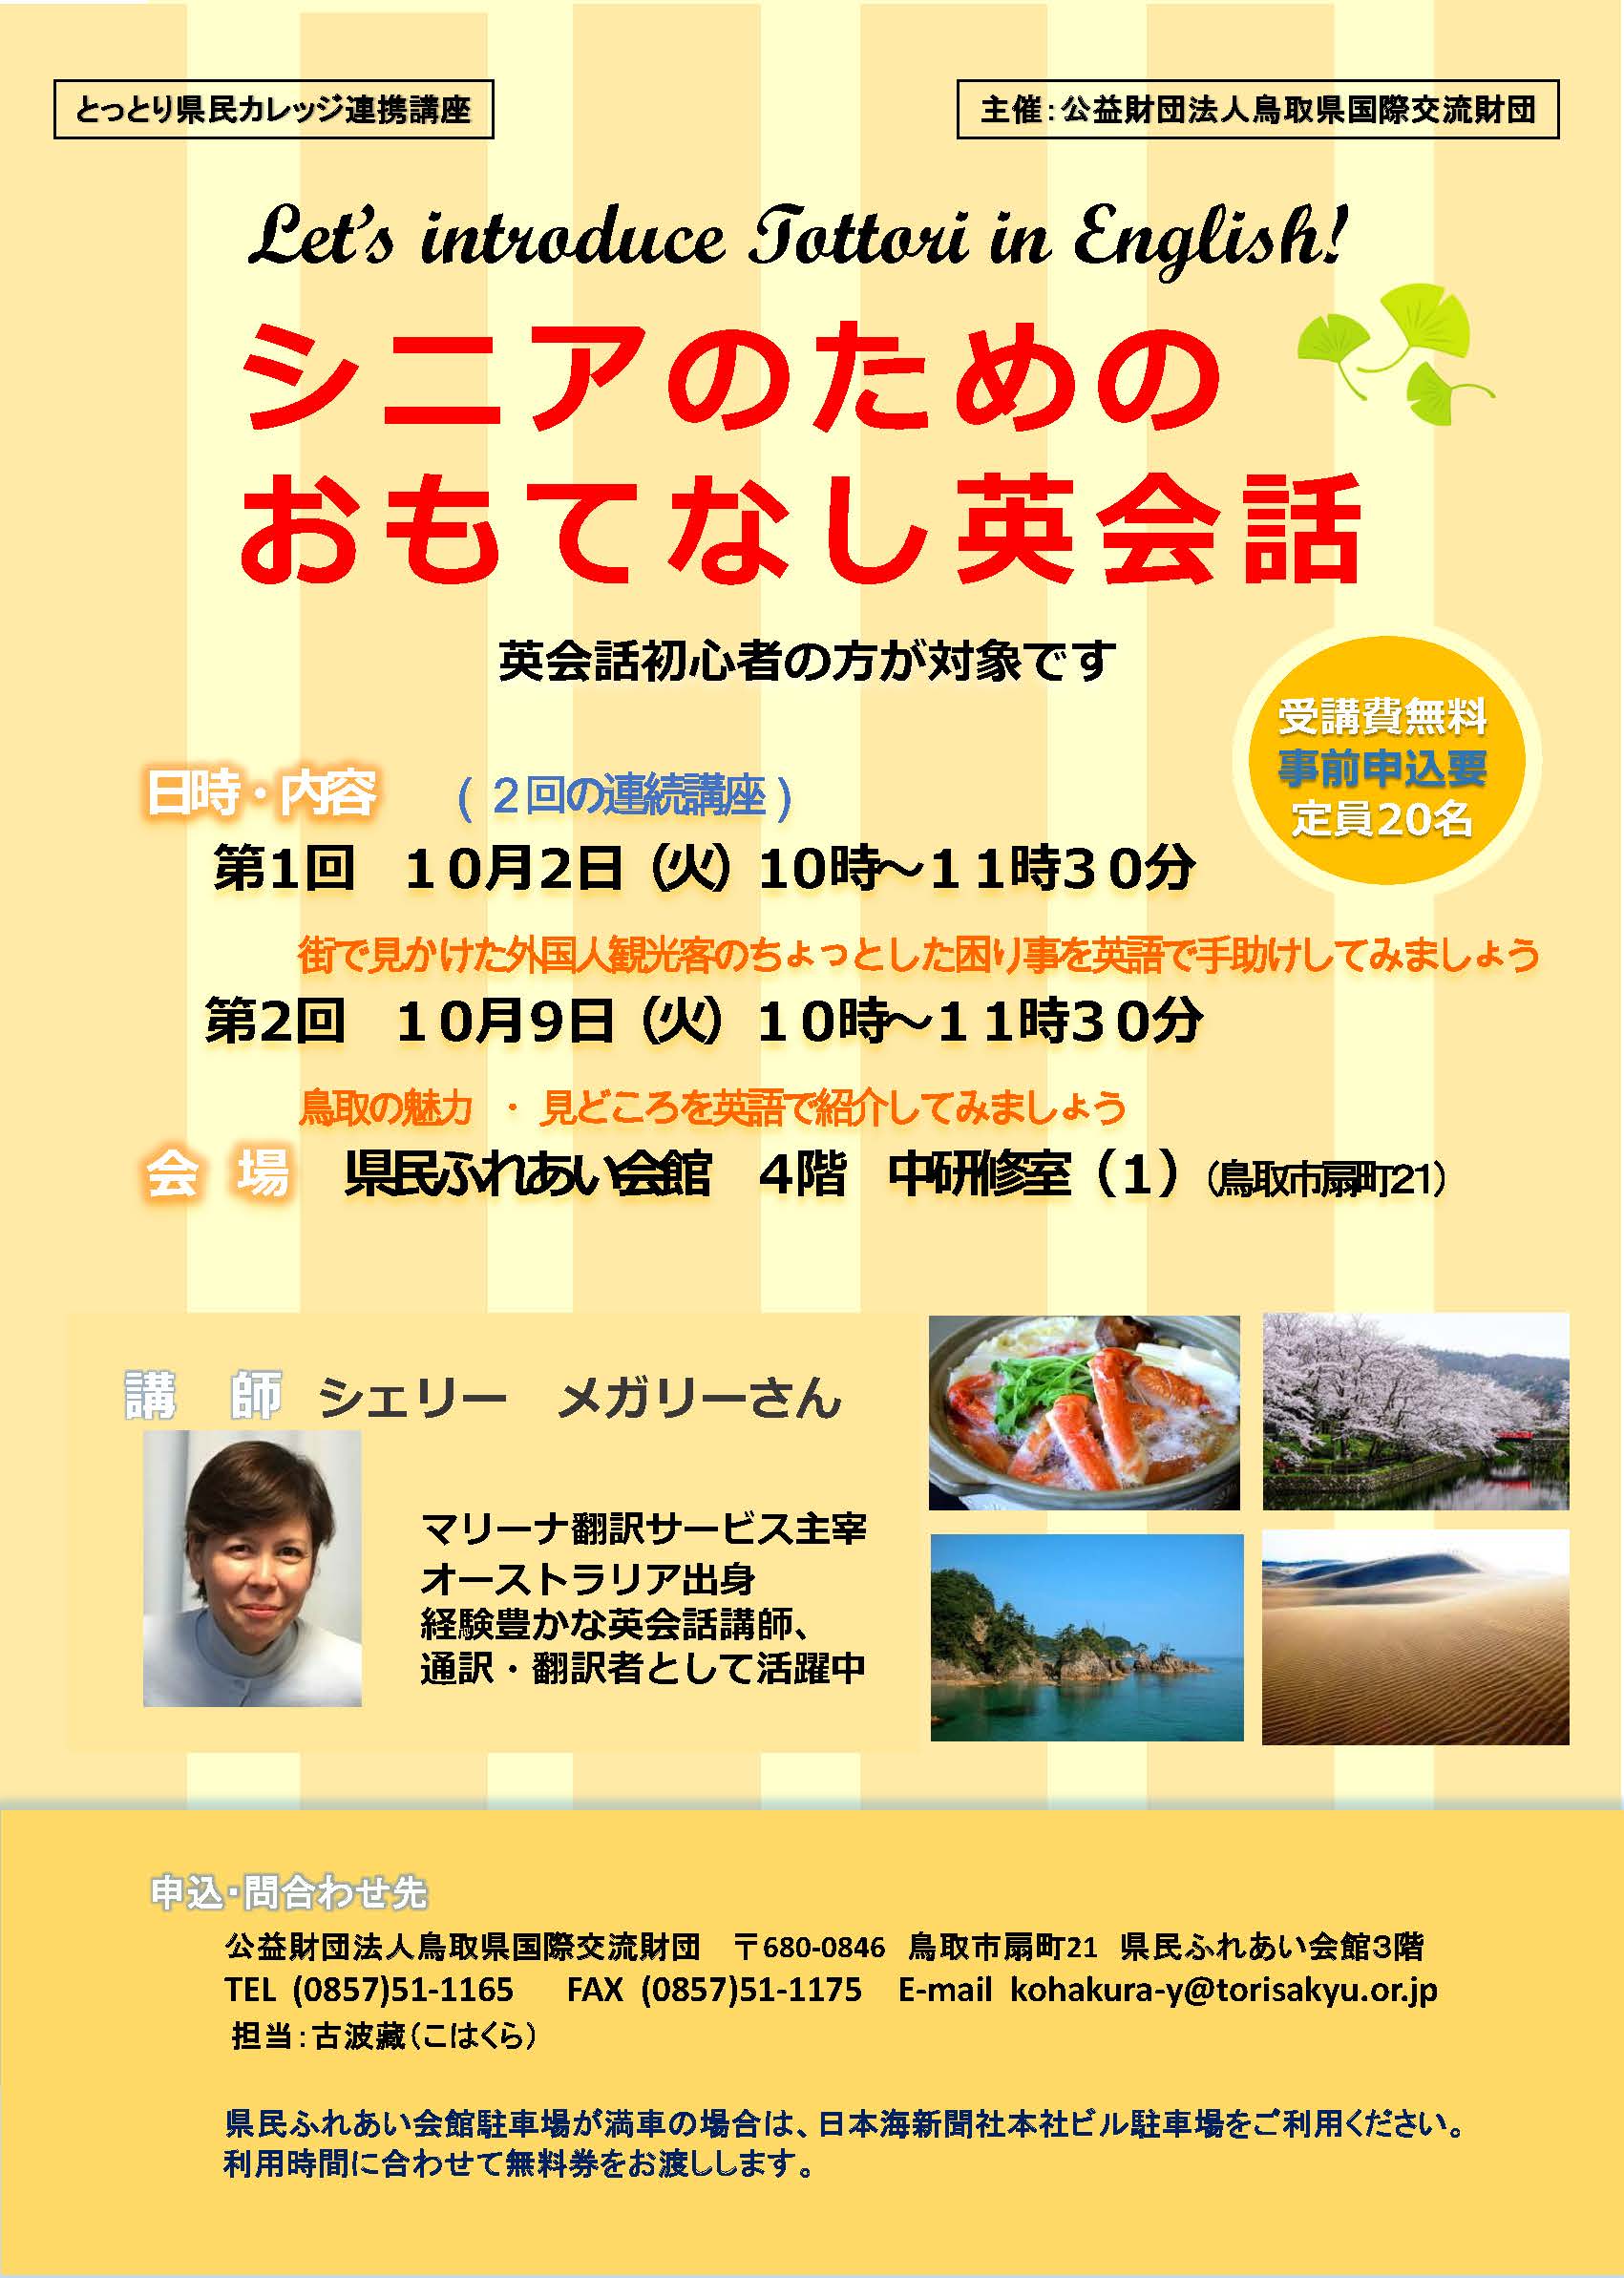 シニアのためのおもてなし英会話 18年10月2日 火 9日 火 公益財団法人 鳥取県国際交流財団 Tottori Prefectural International Exchange Foundation